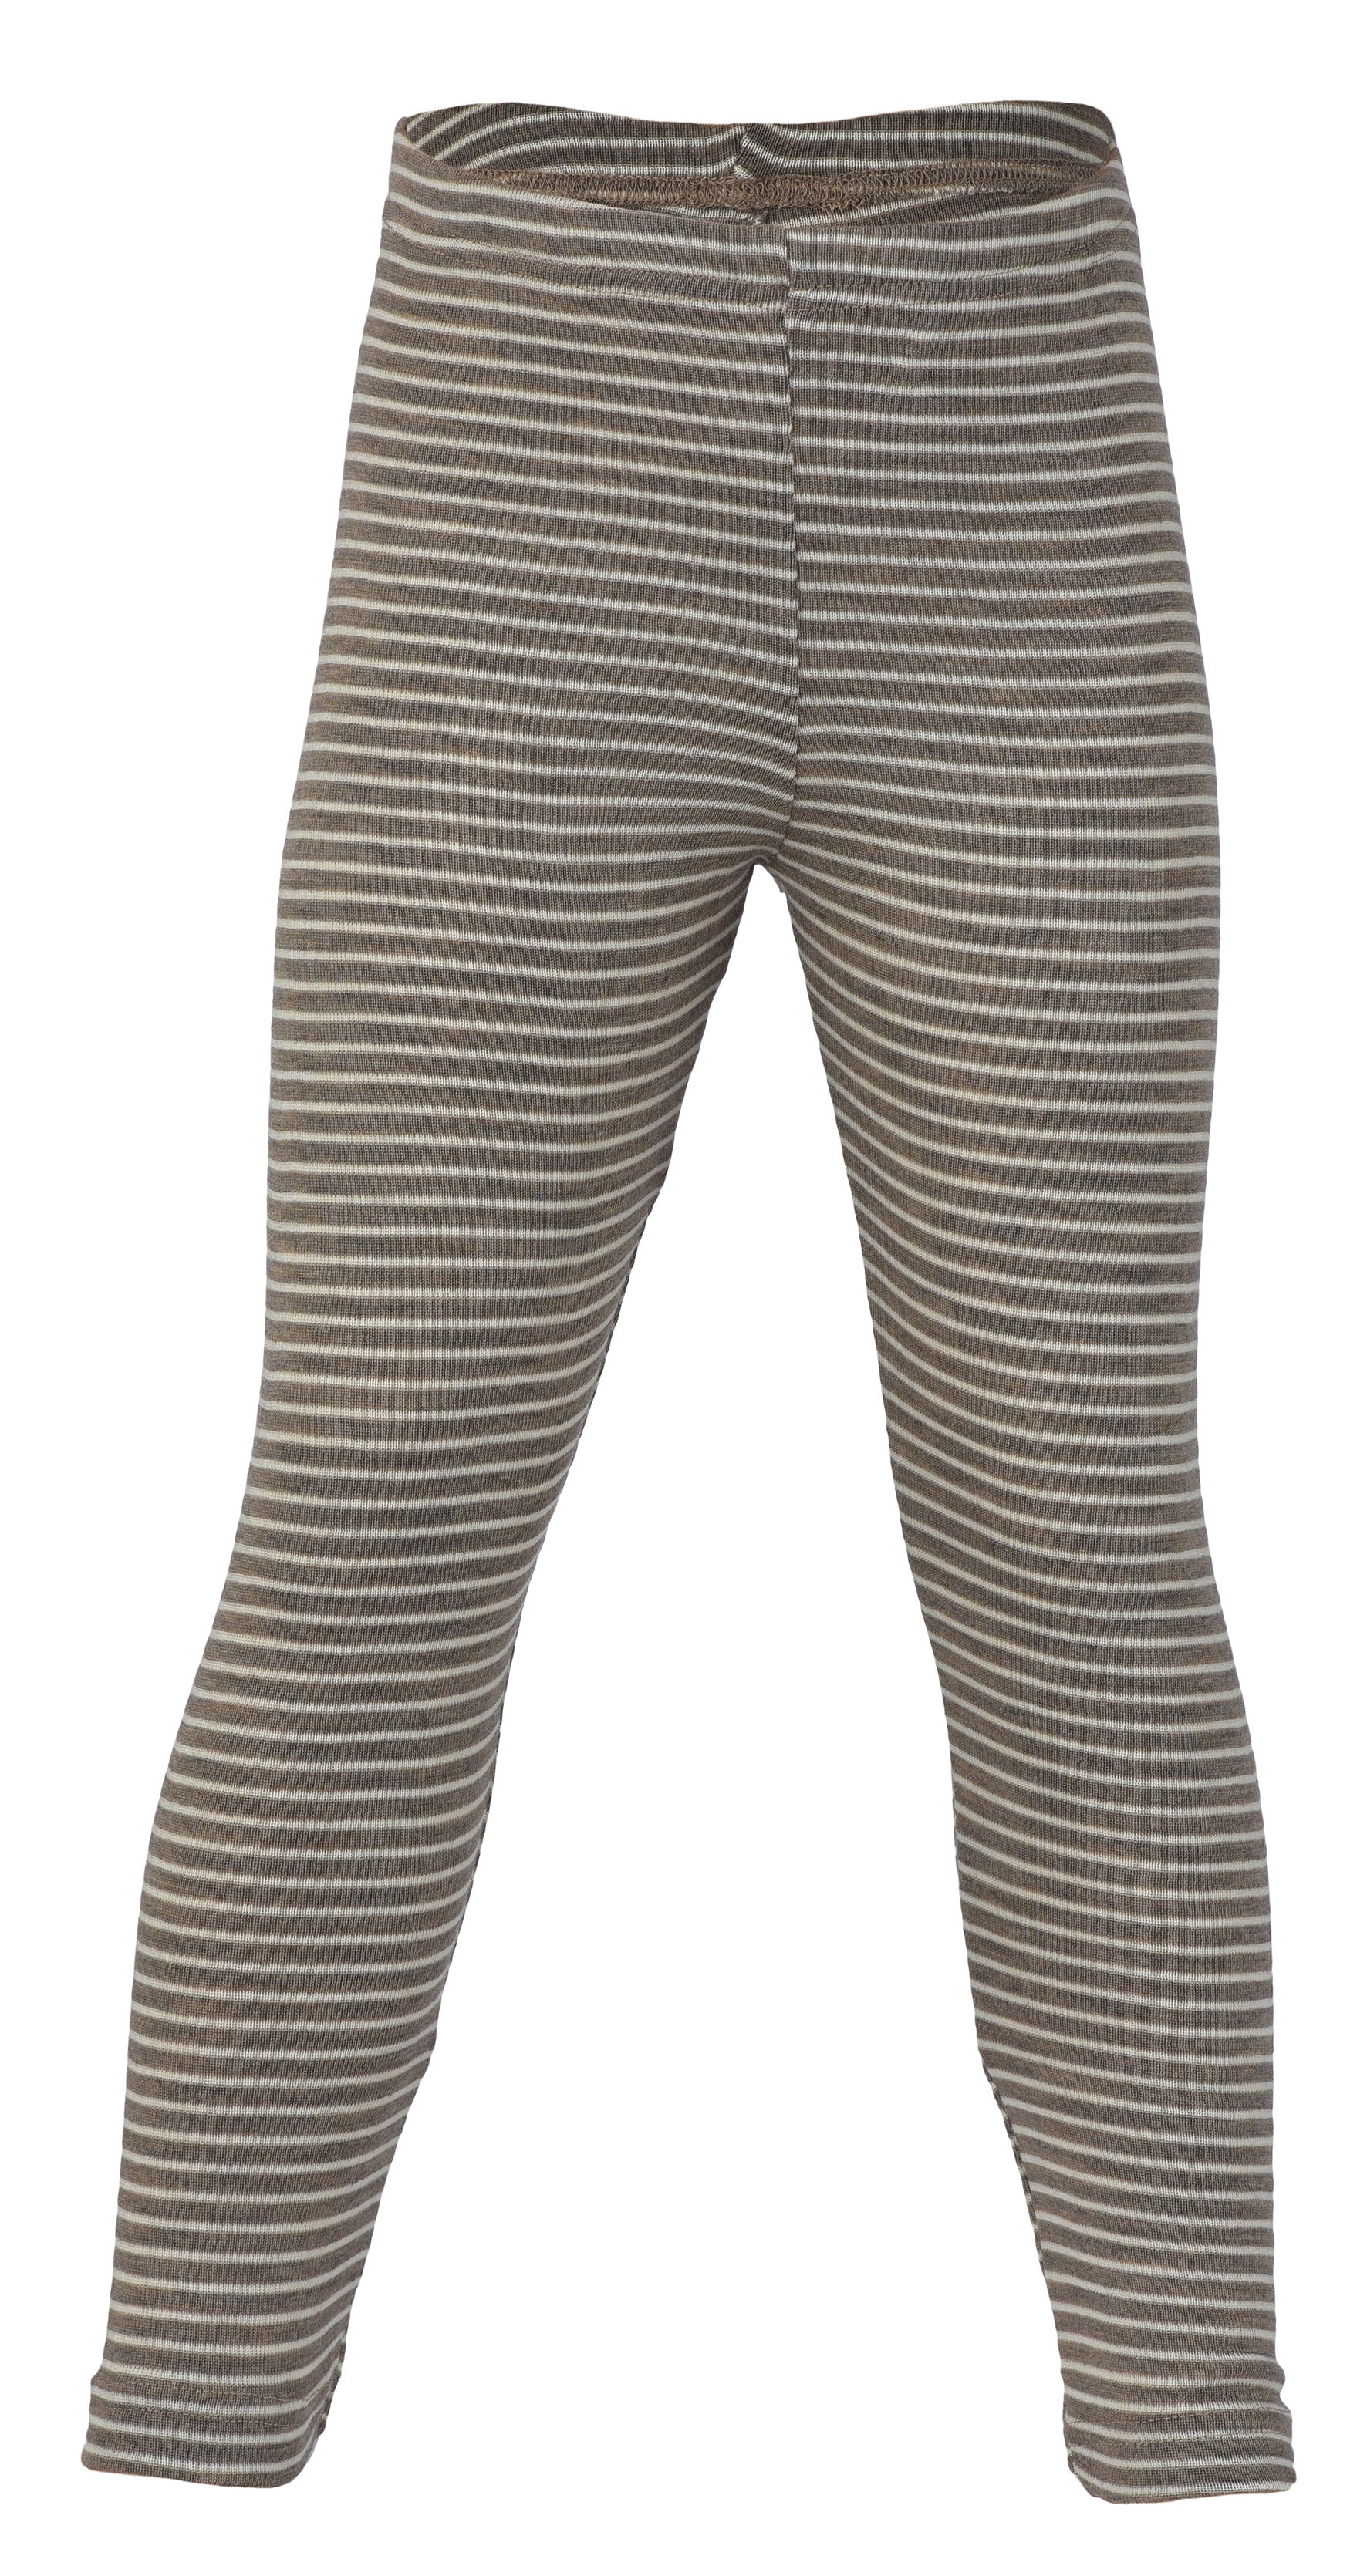 Leggings & Pants for Women in Merino Wool and Wool/Silk blends - Woollykins